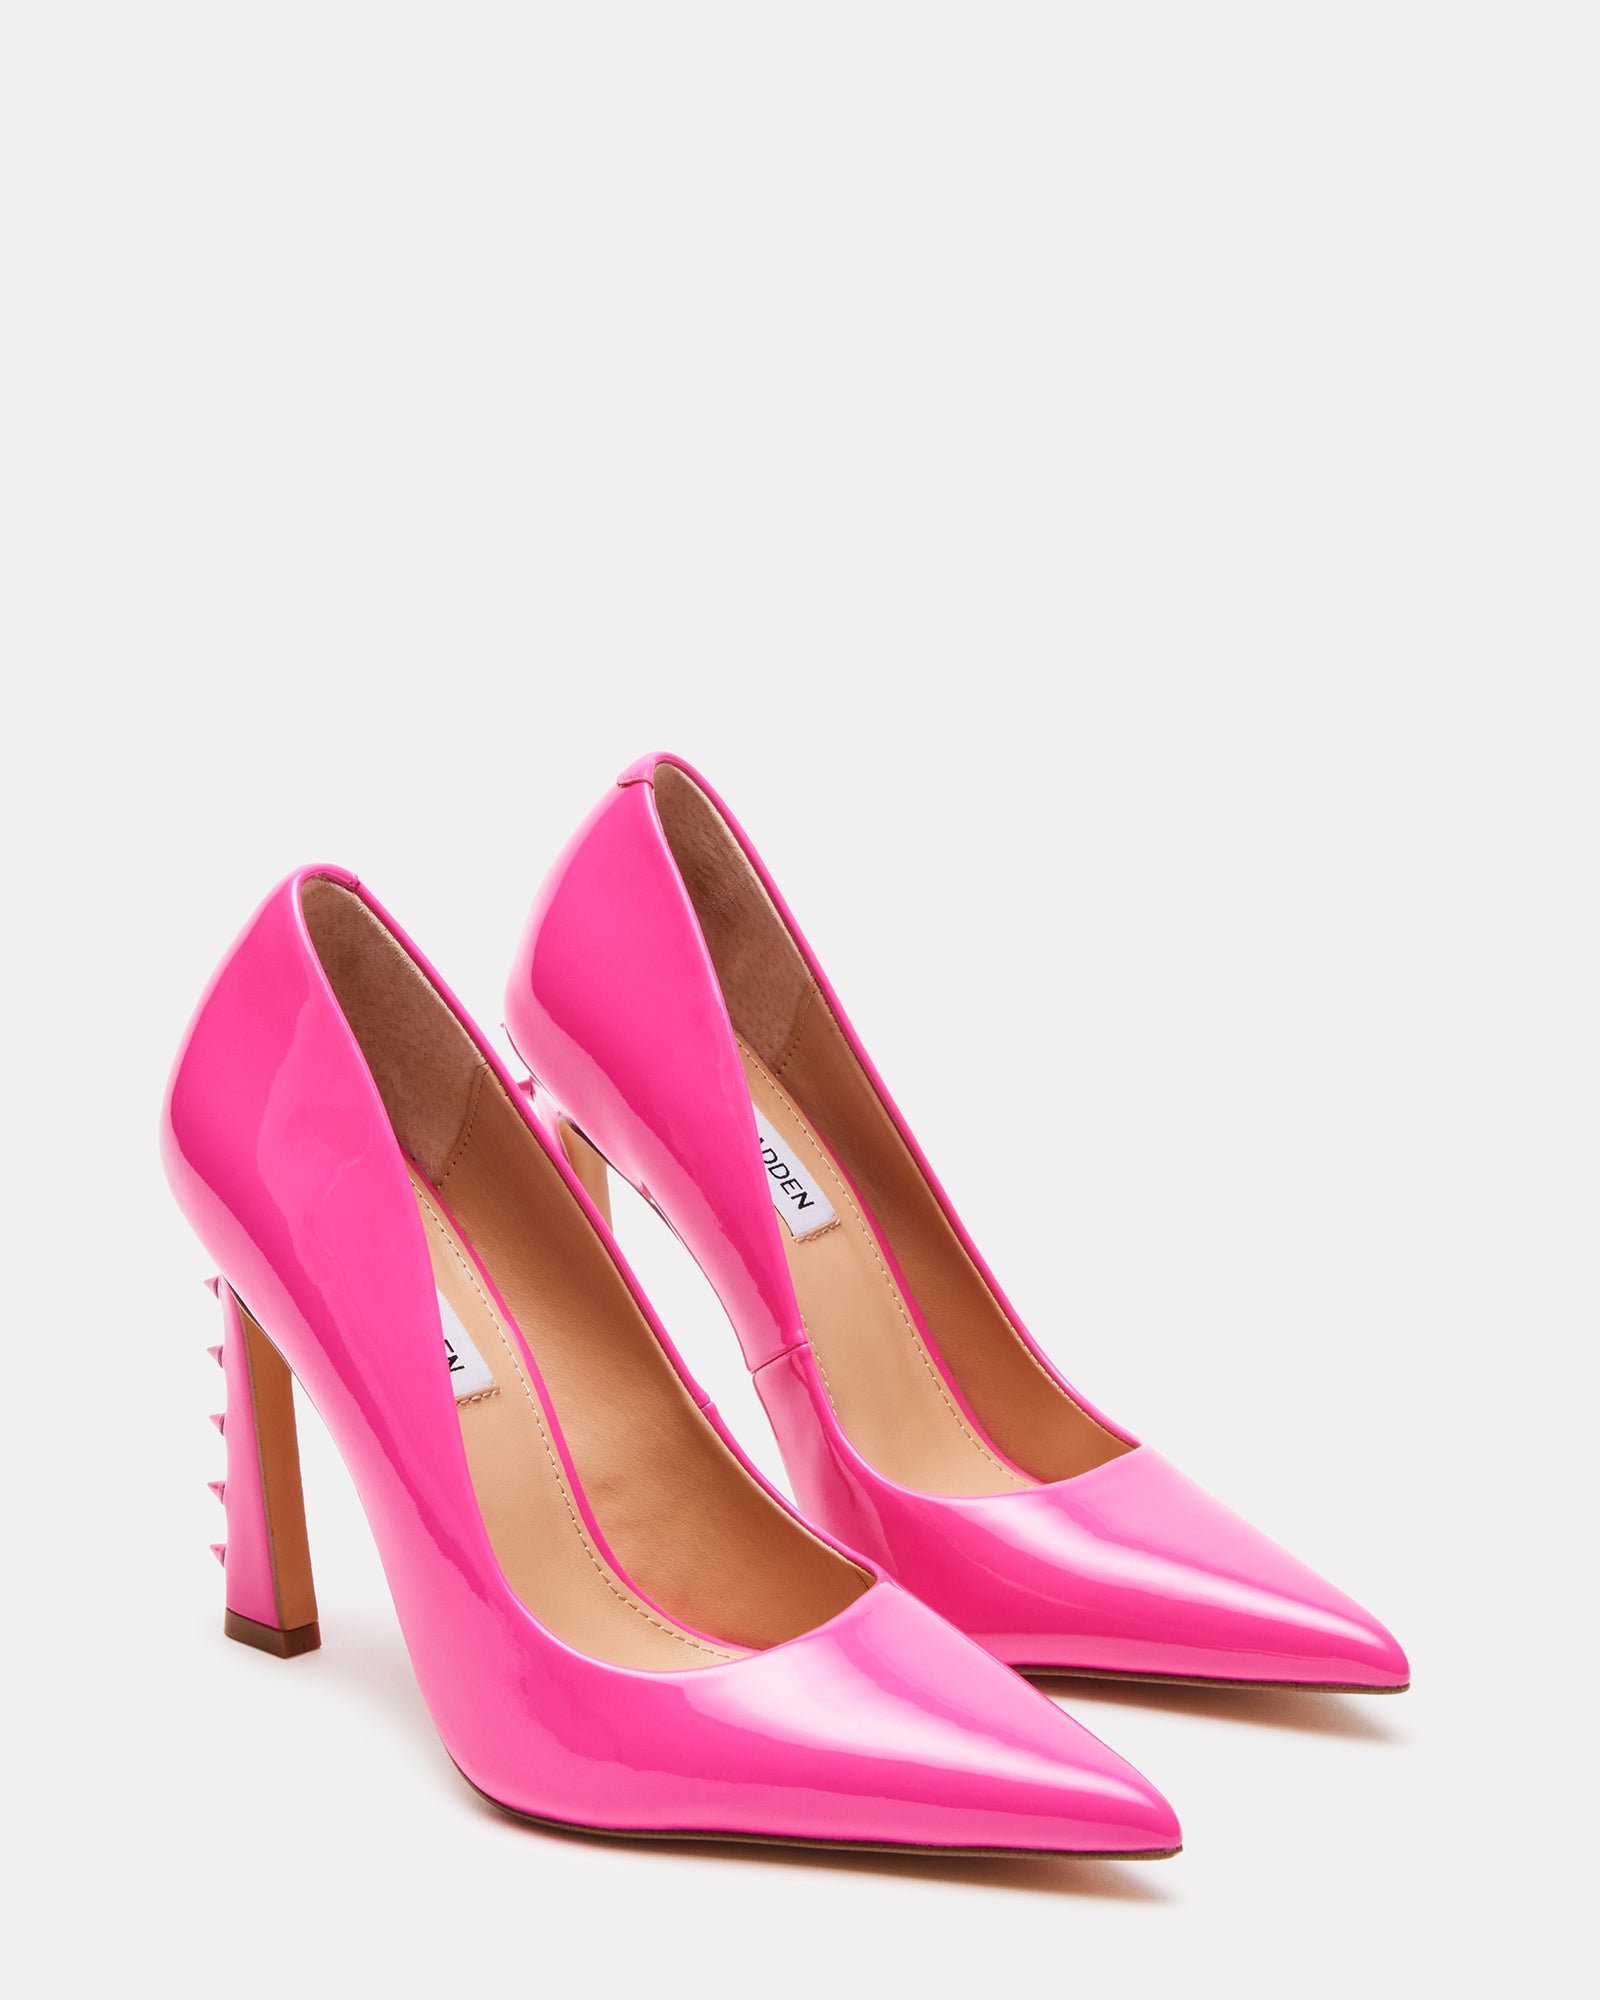 SPADES Pink Patent Pump | Women's Heels – Steve Madden